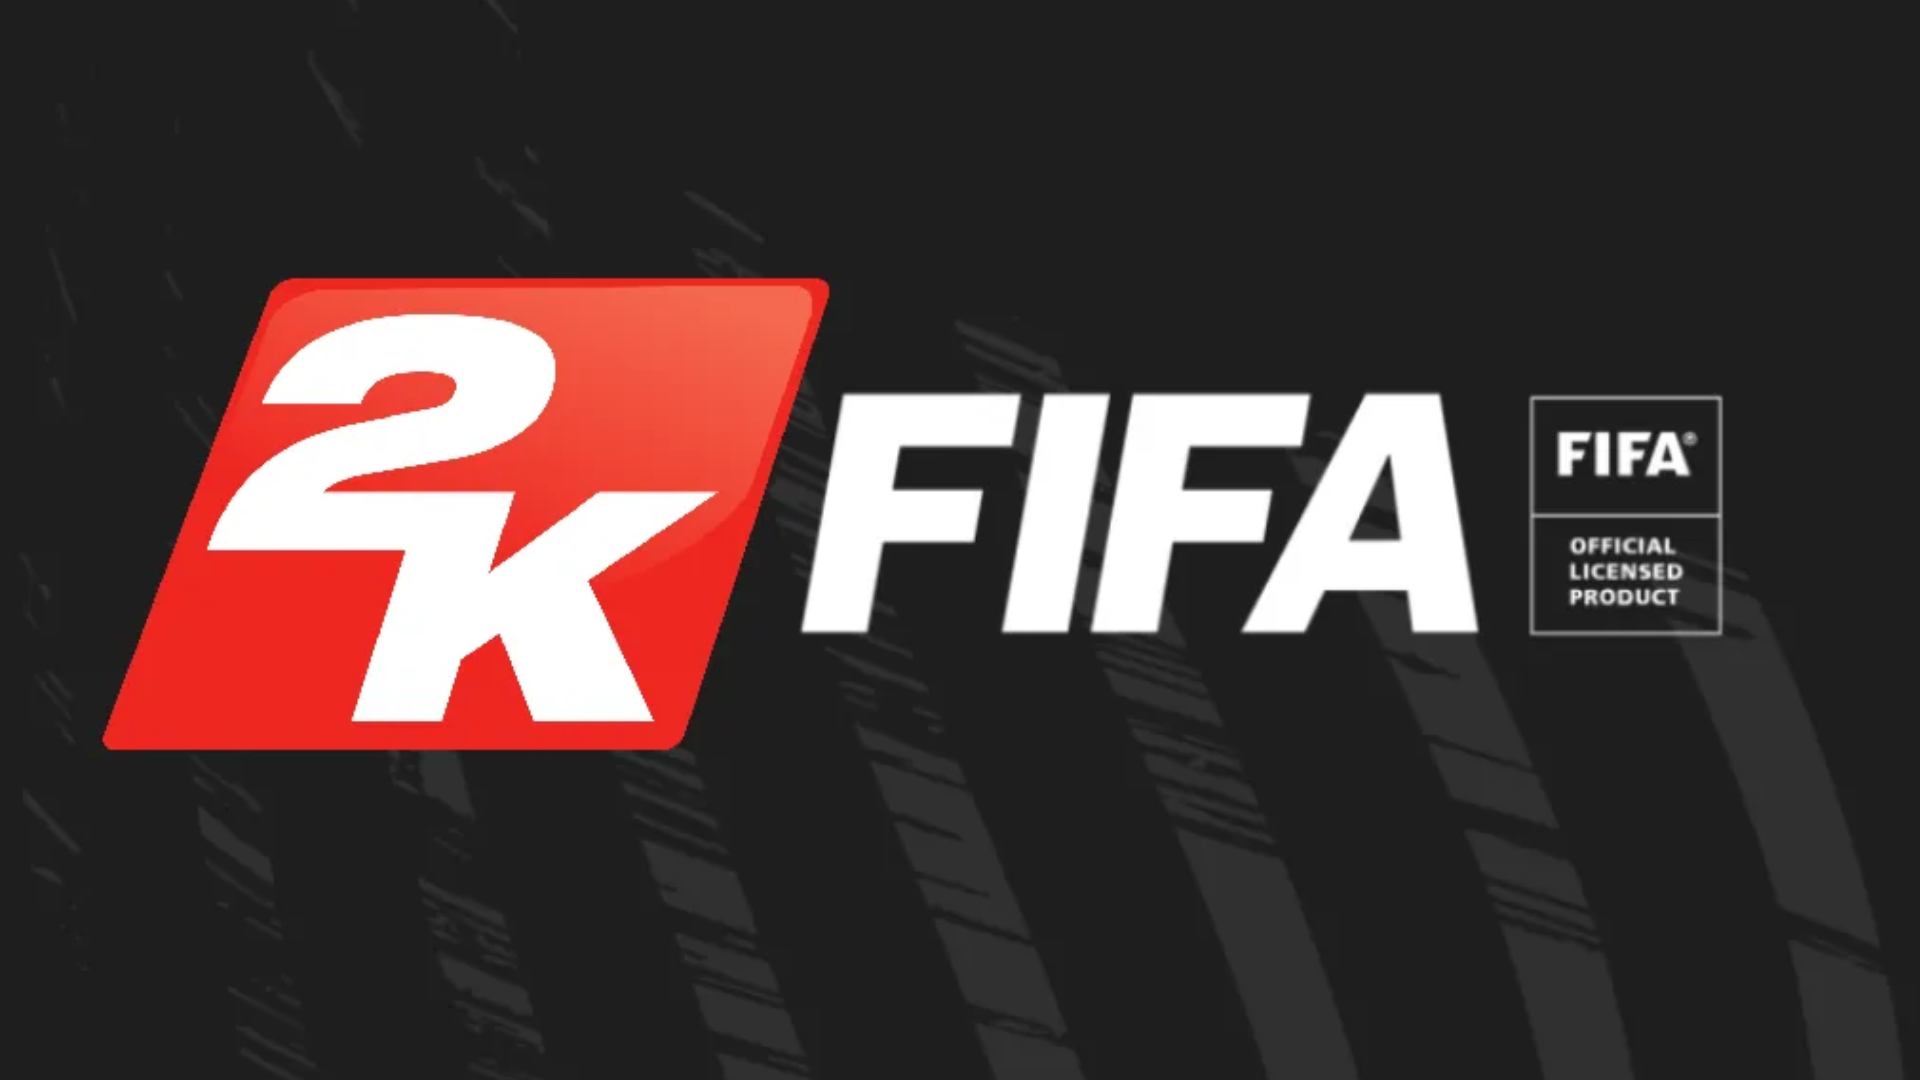 2k FIFA